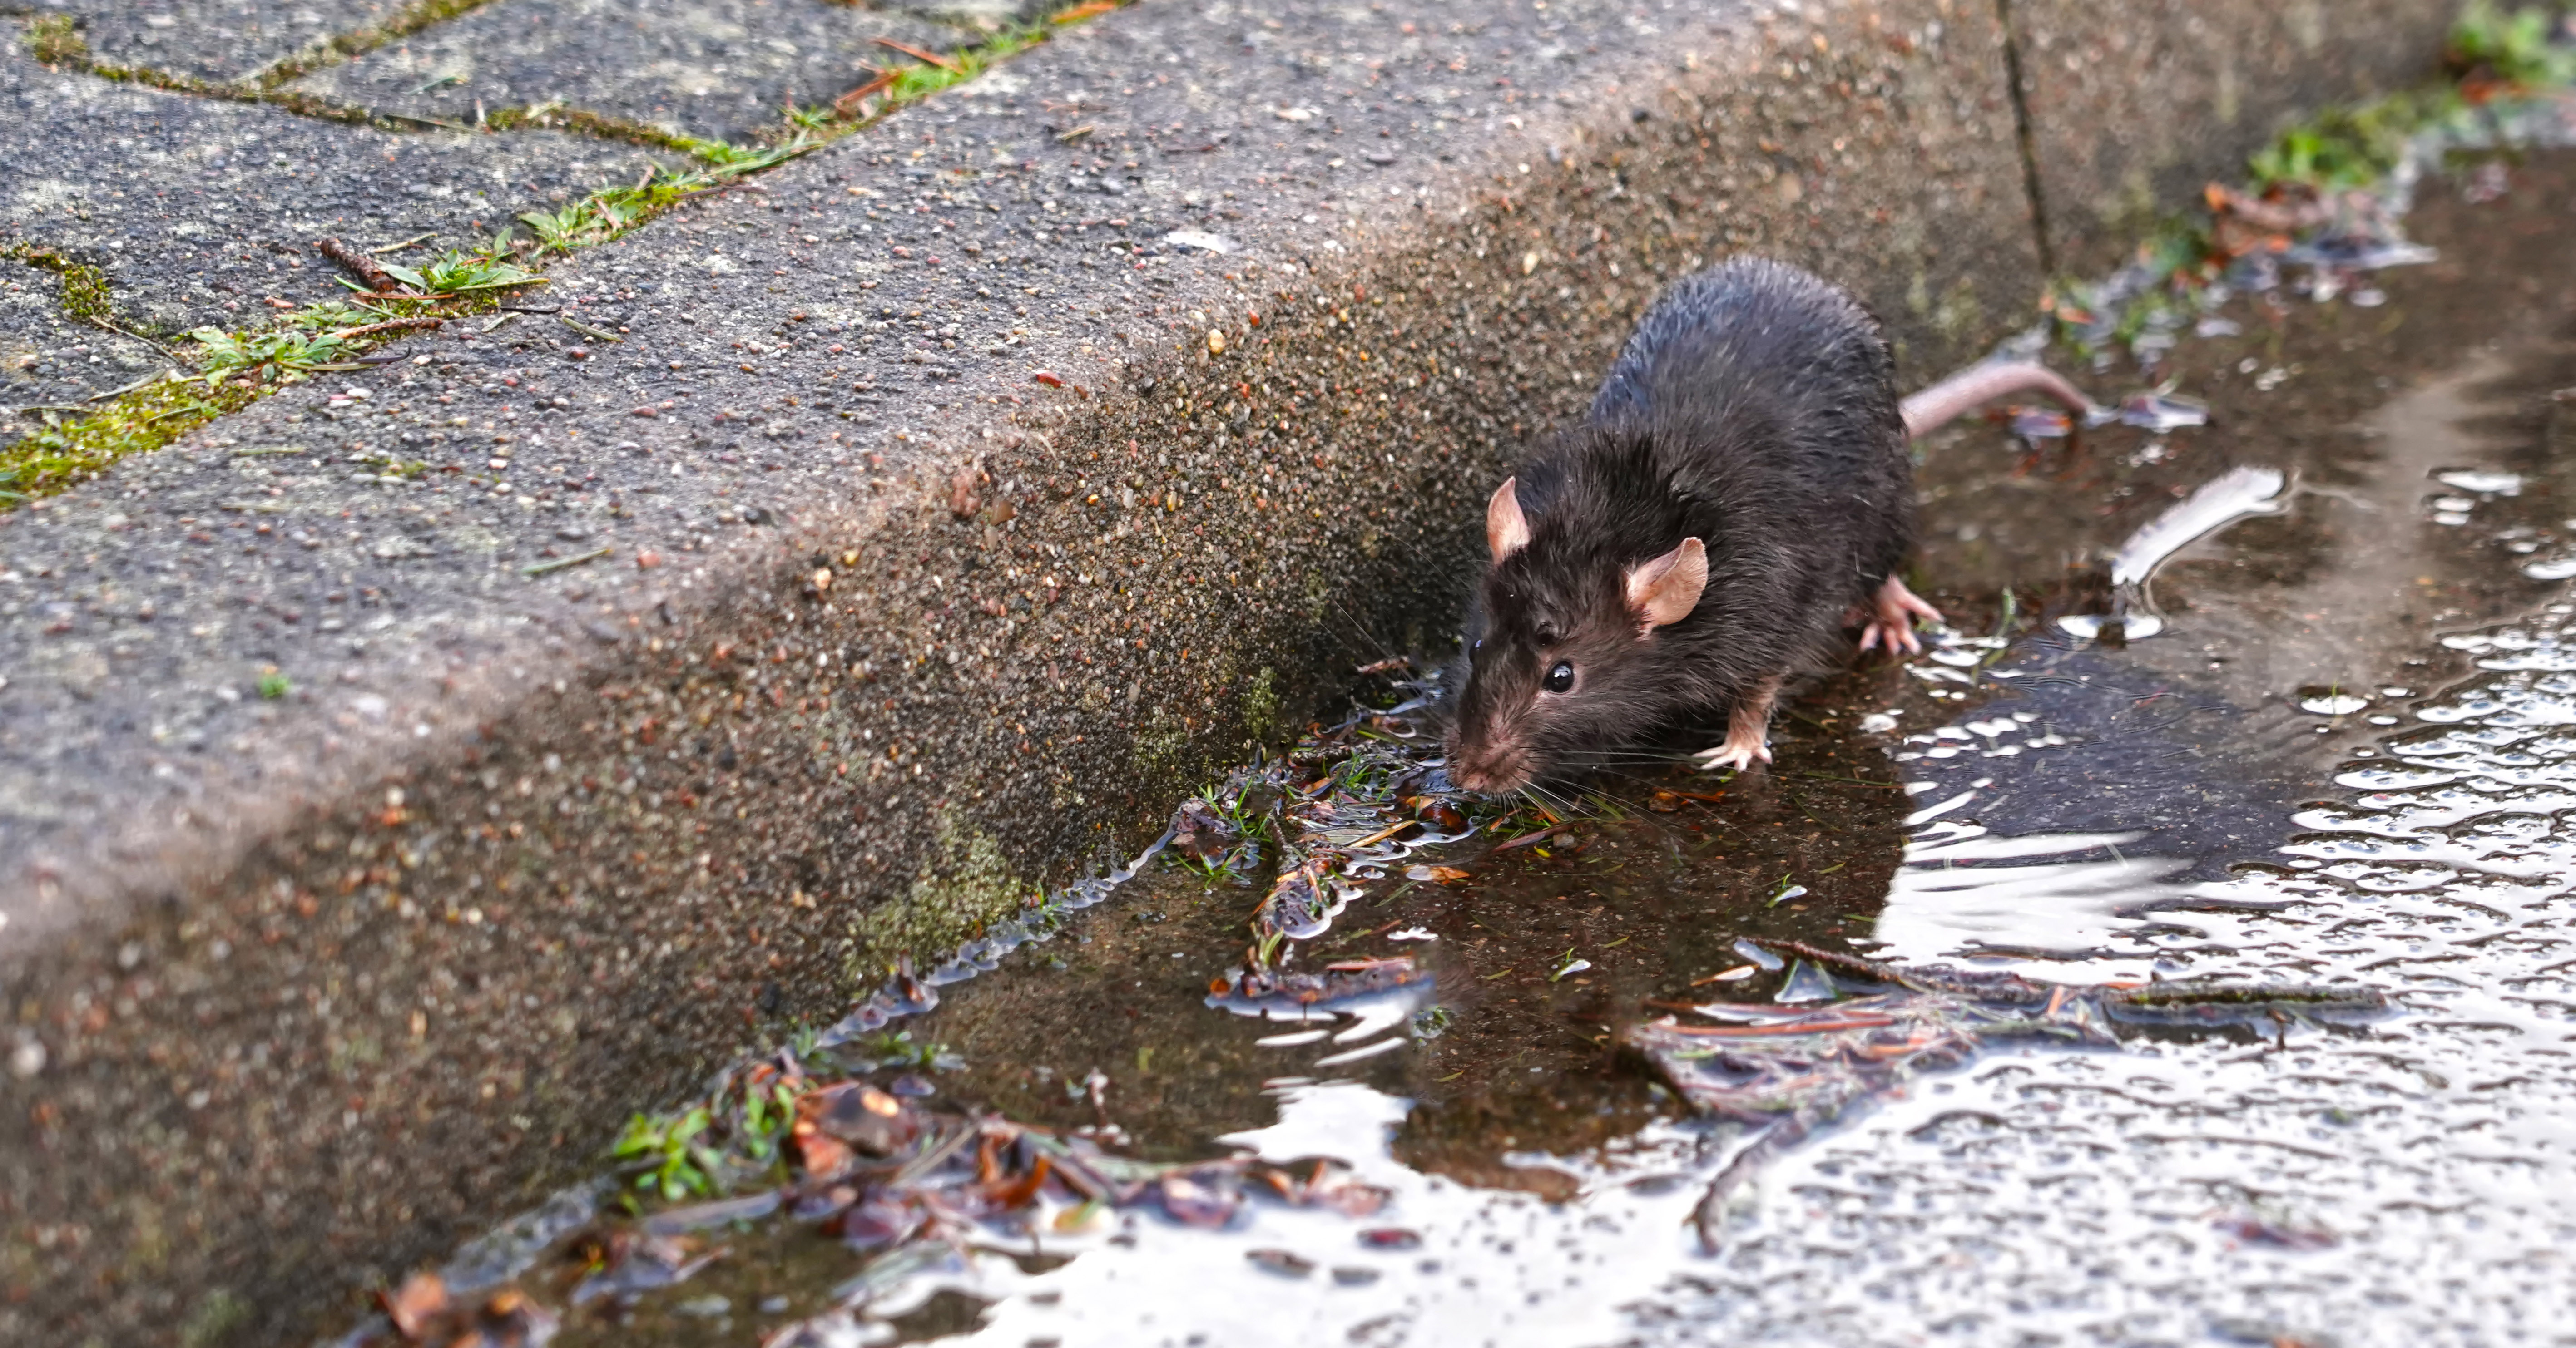 Norway Rat in Streets